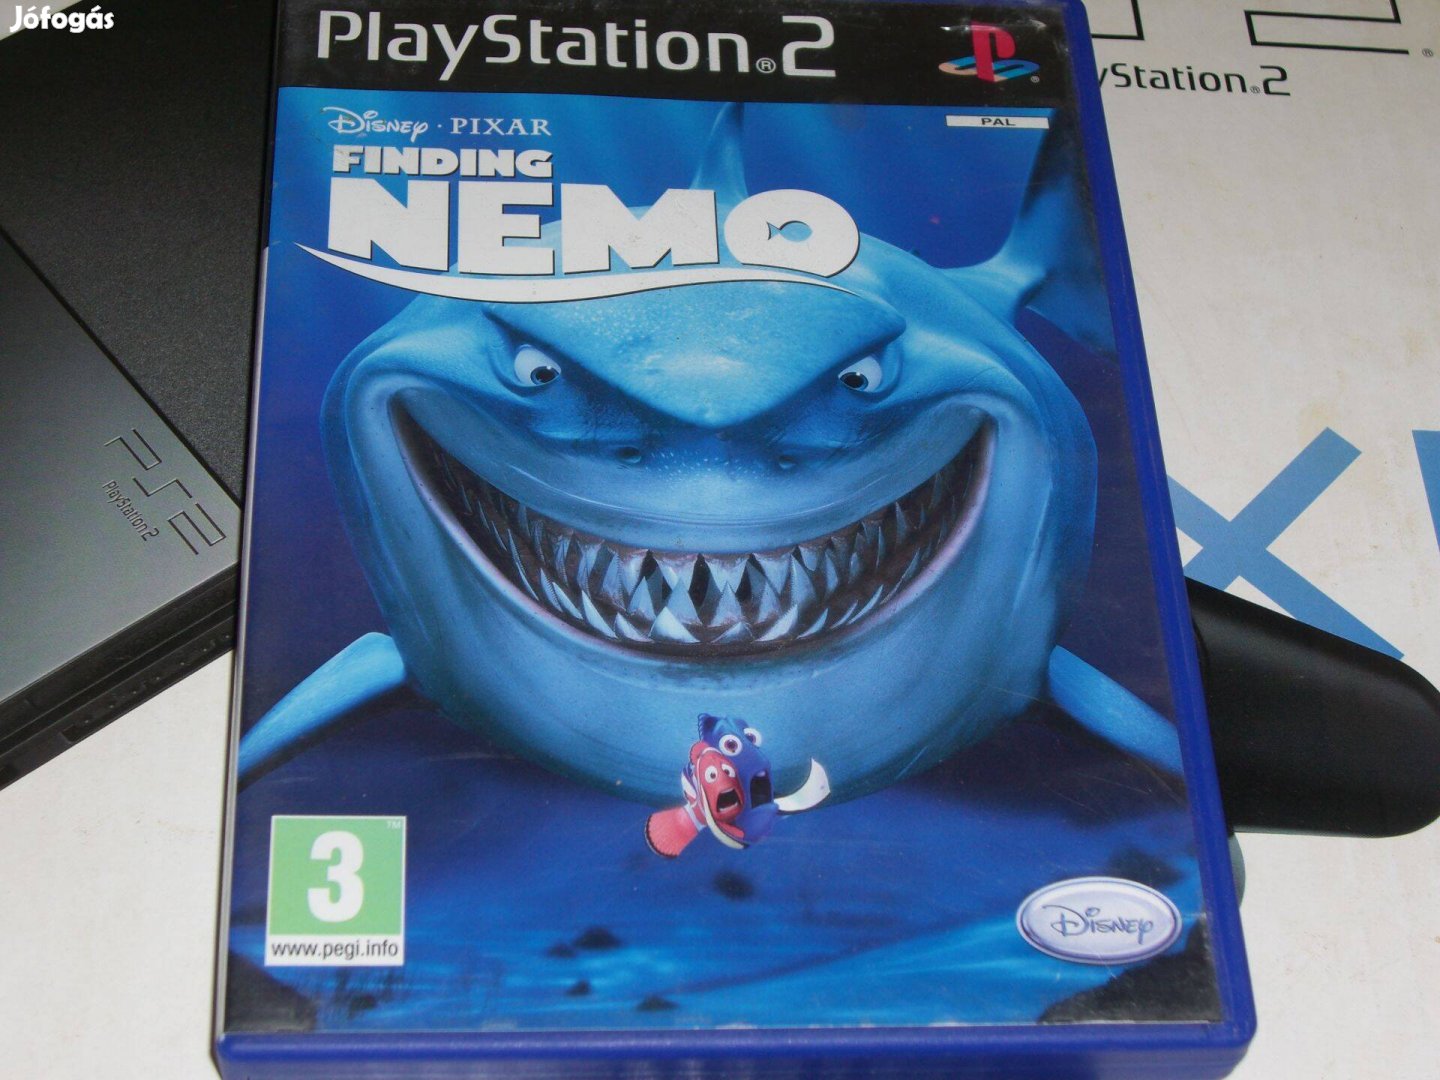 Finding Nemo - Némó Nyomában Playstation 2 eredeti lemez eladó